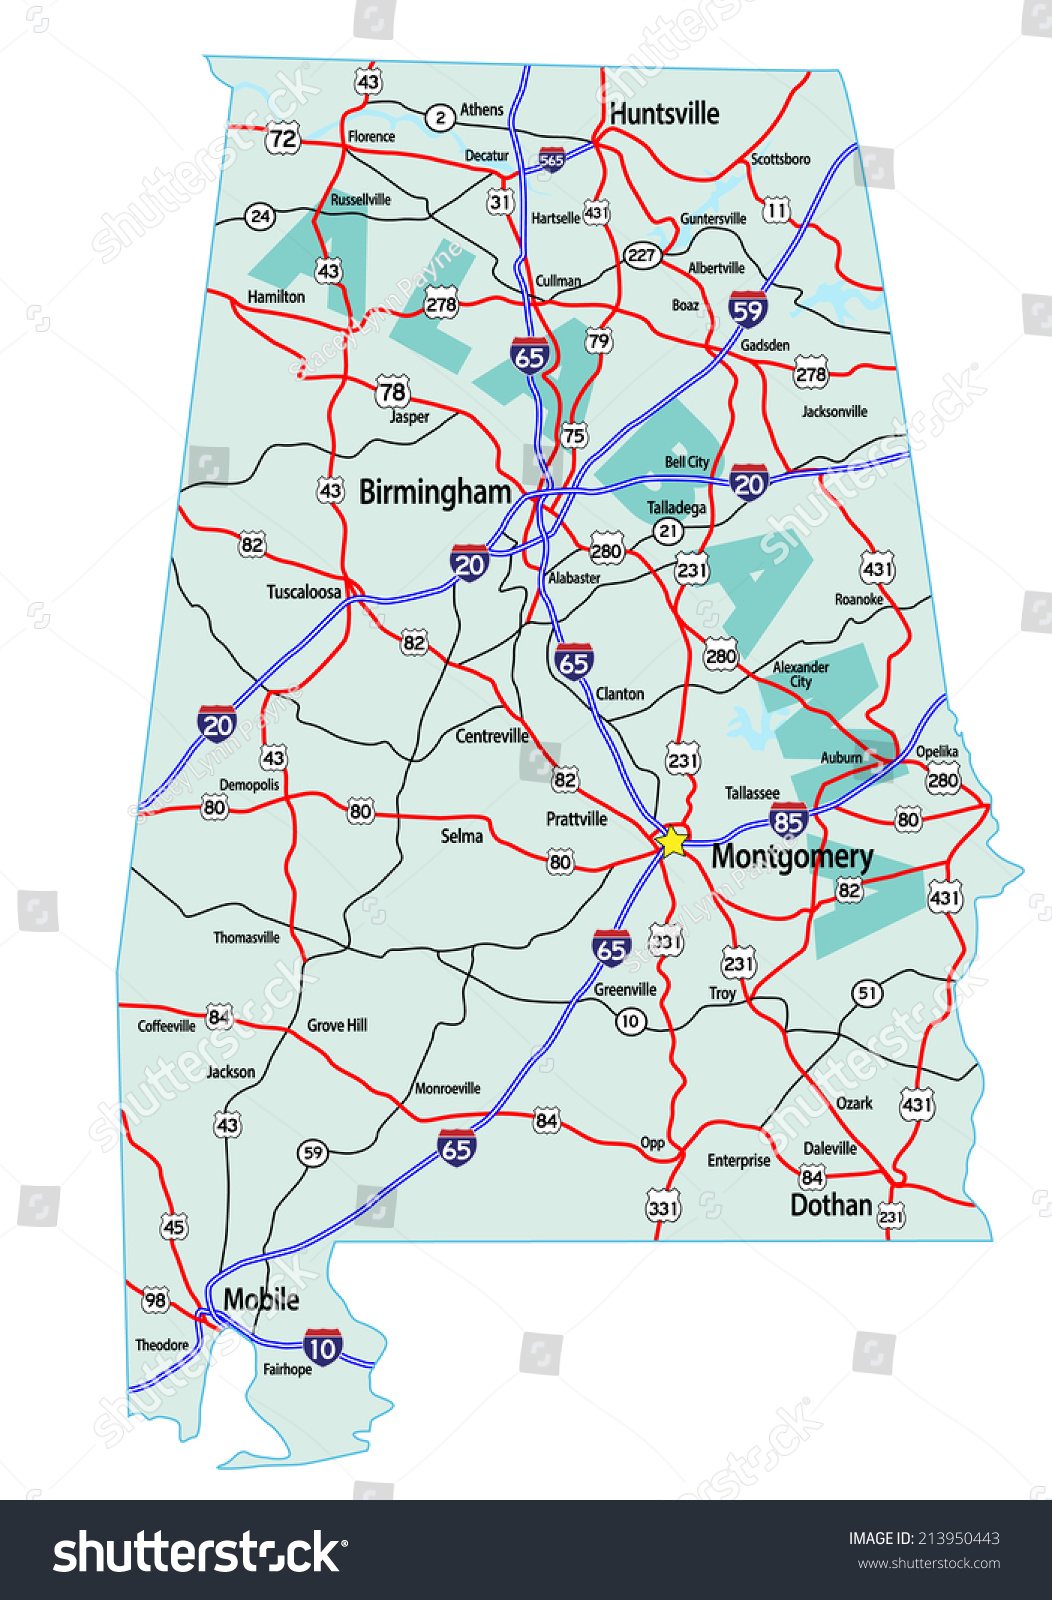 美国阿拉巴马州与州际公路路线图和高速公路。